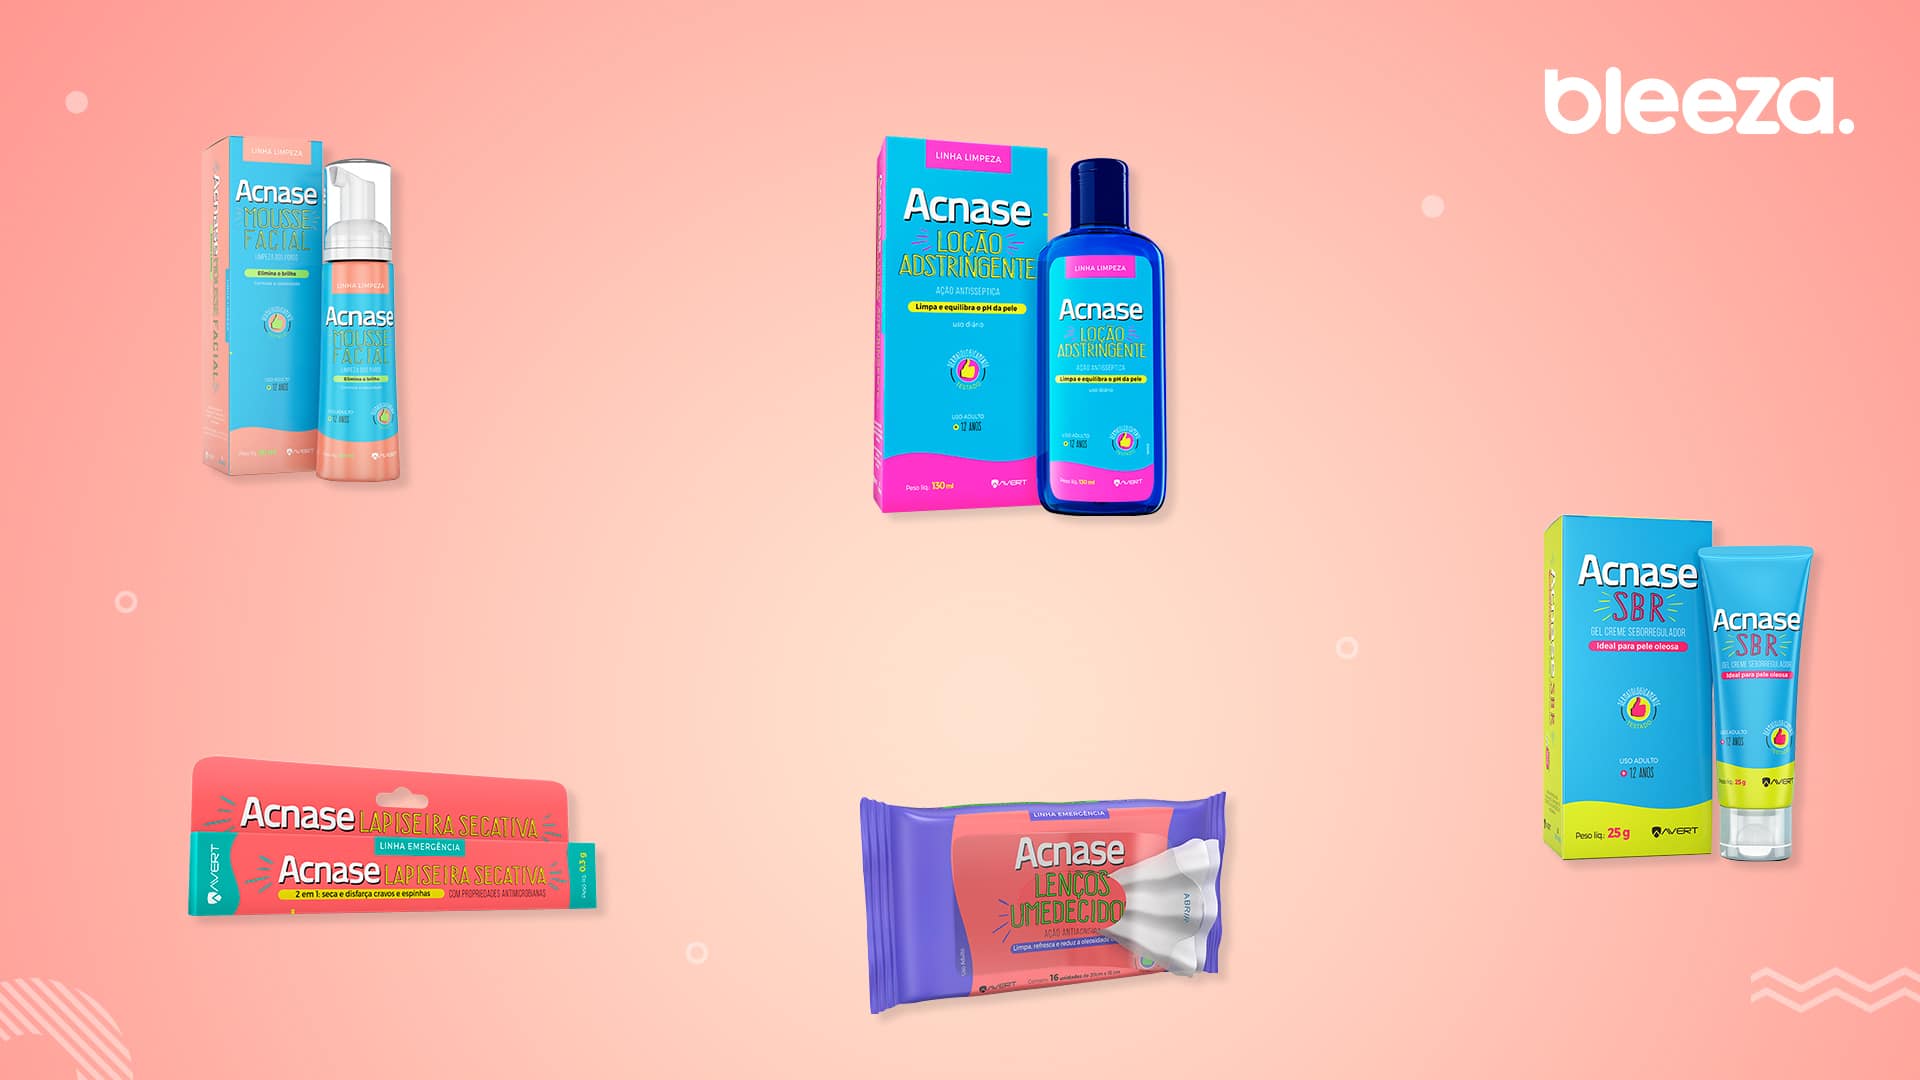 Foto de capa do artigo "5 produtos para acne da linha Acnase: eles resolvem o problema?"